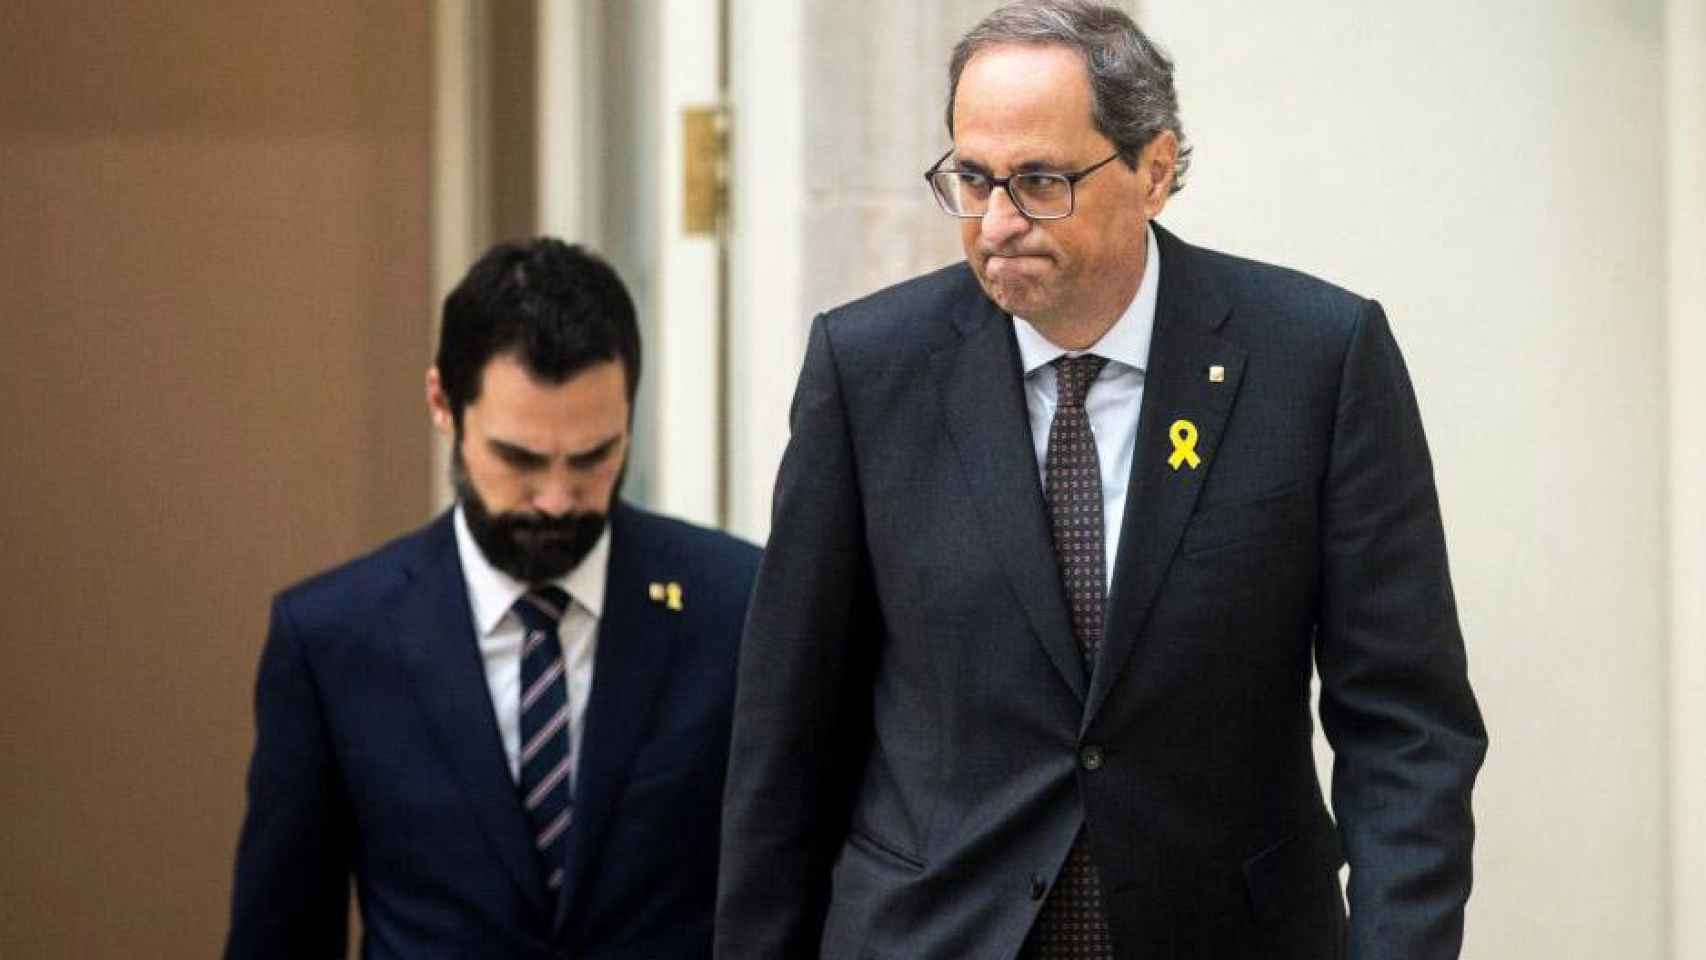 El presidente de la Generalitat, Quim Torra (en primer plano) y el presidente del Parlament, Roger Torrent. JxCat y ERC / CG